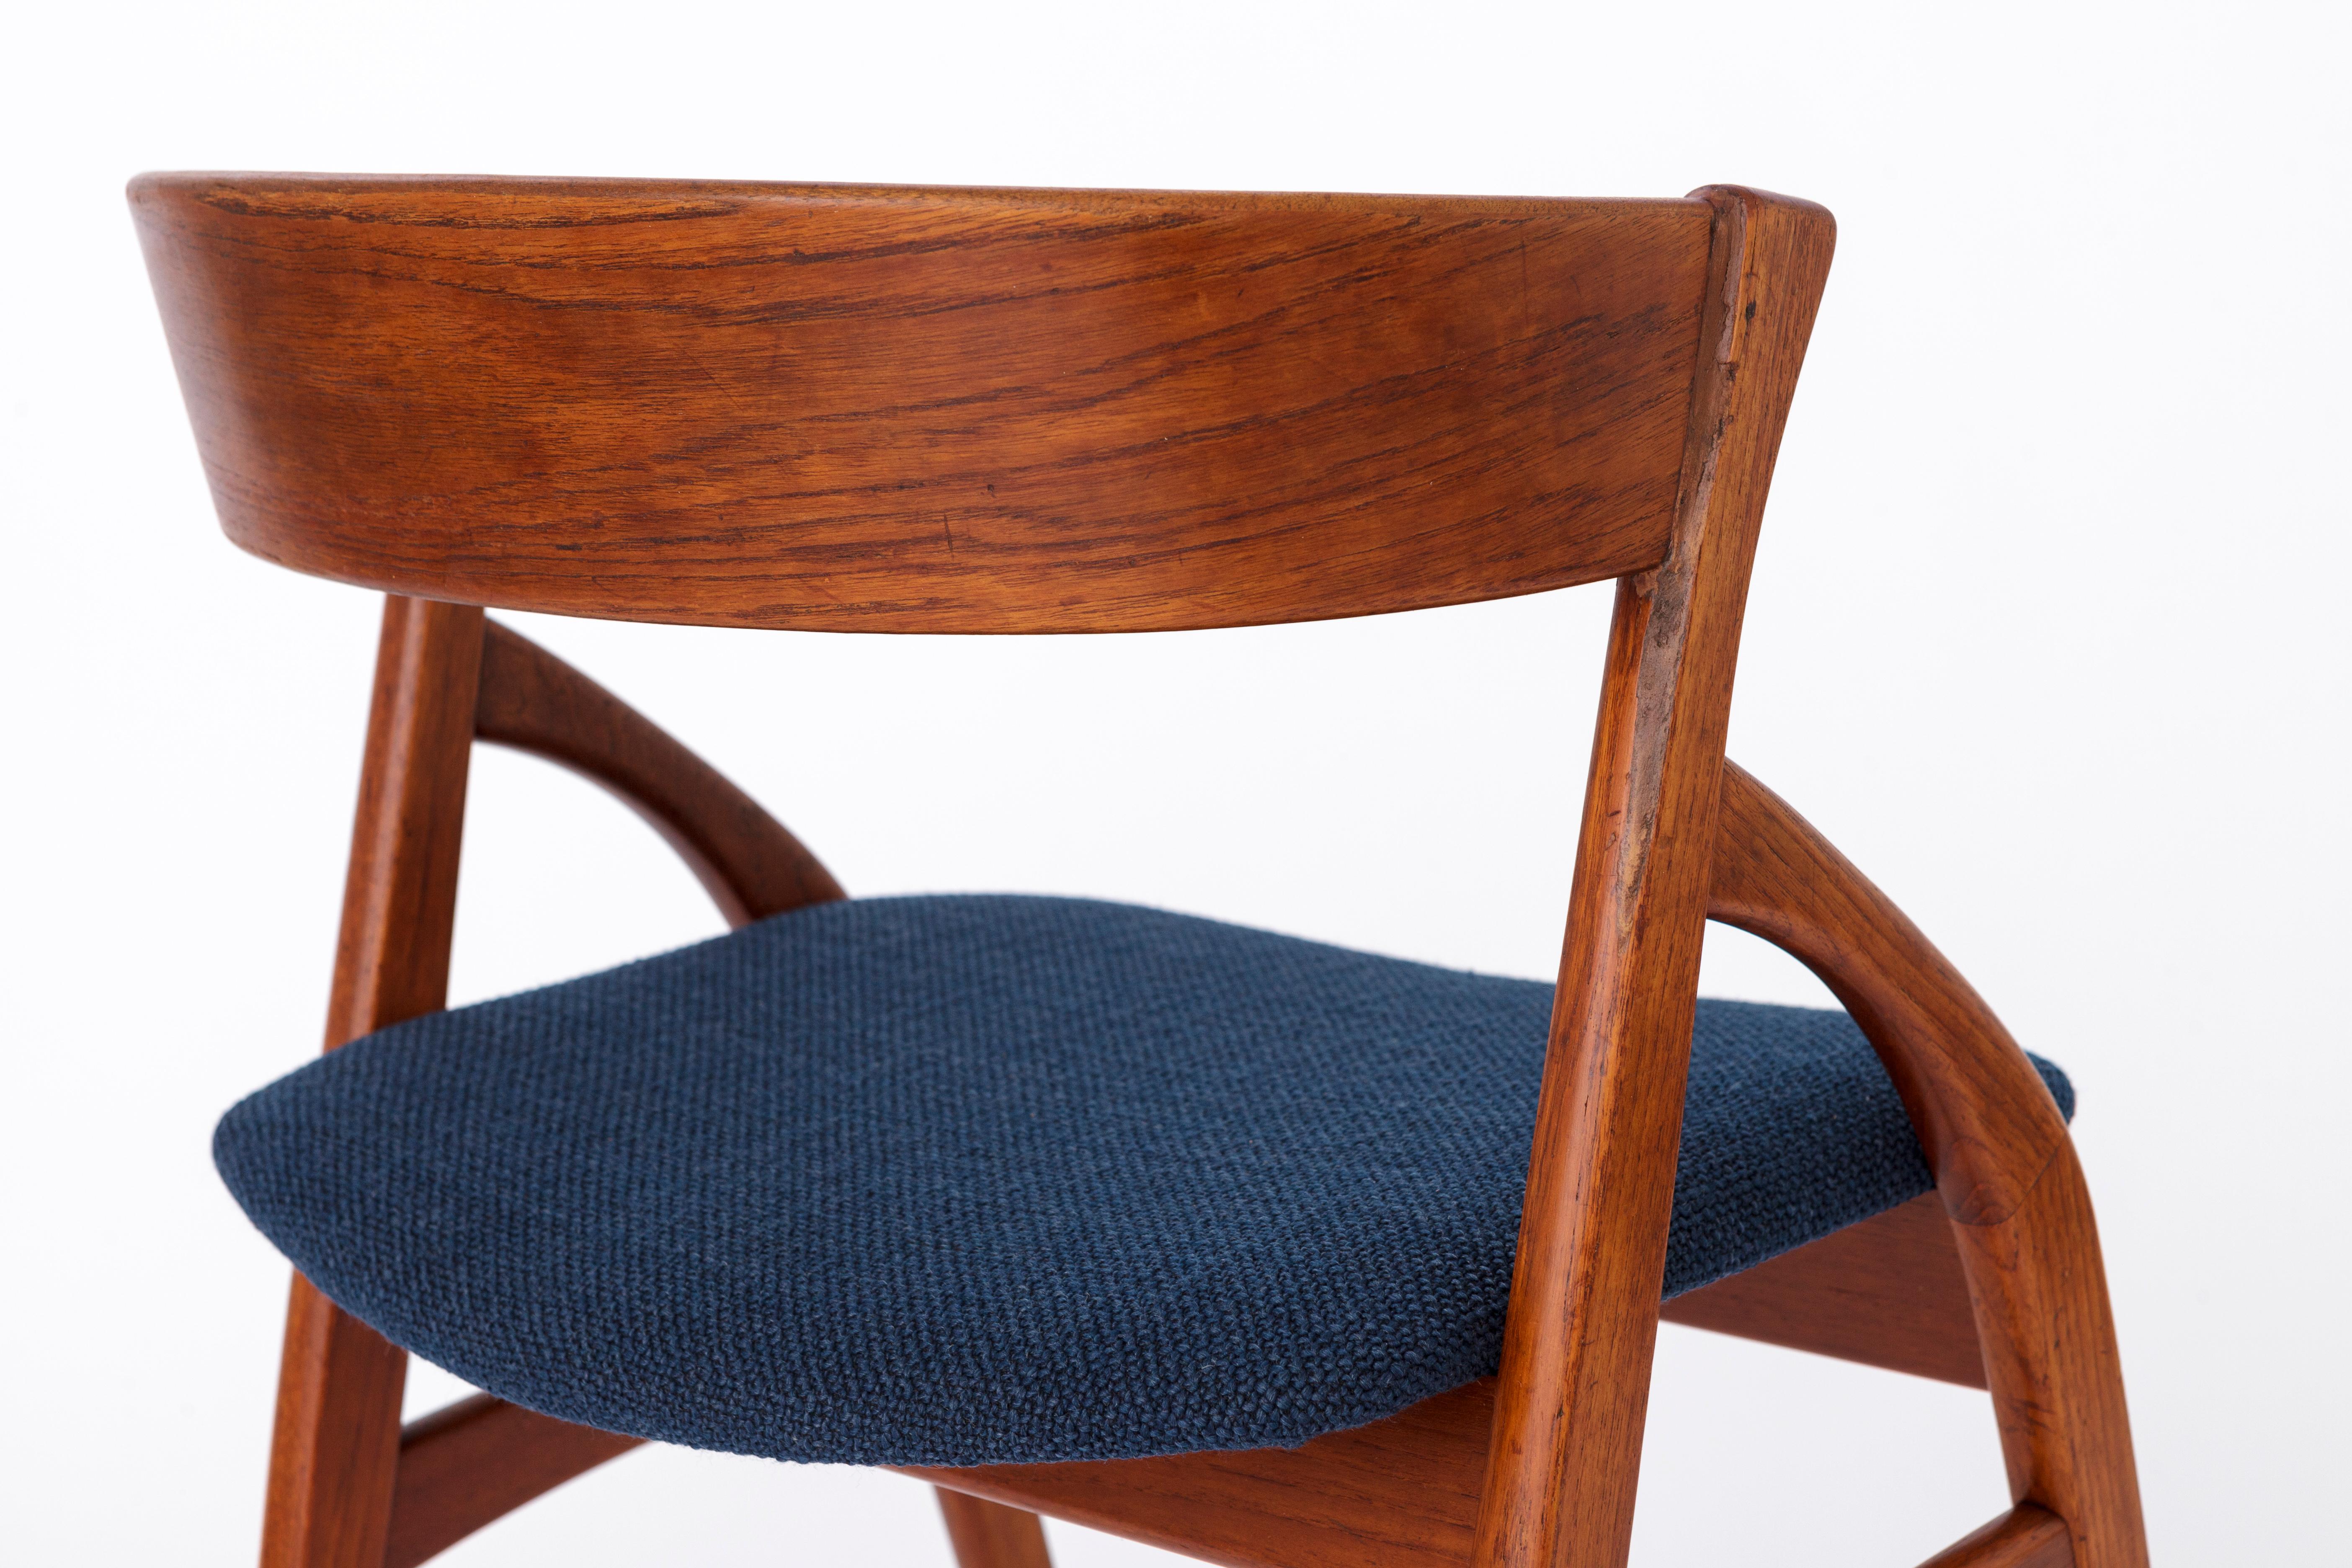 Dyrlund Teak Chair 1960s Vintage - Repaired 2